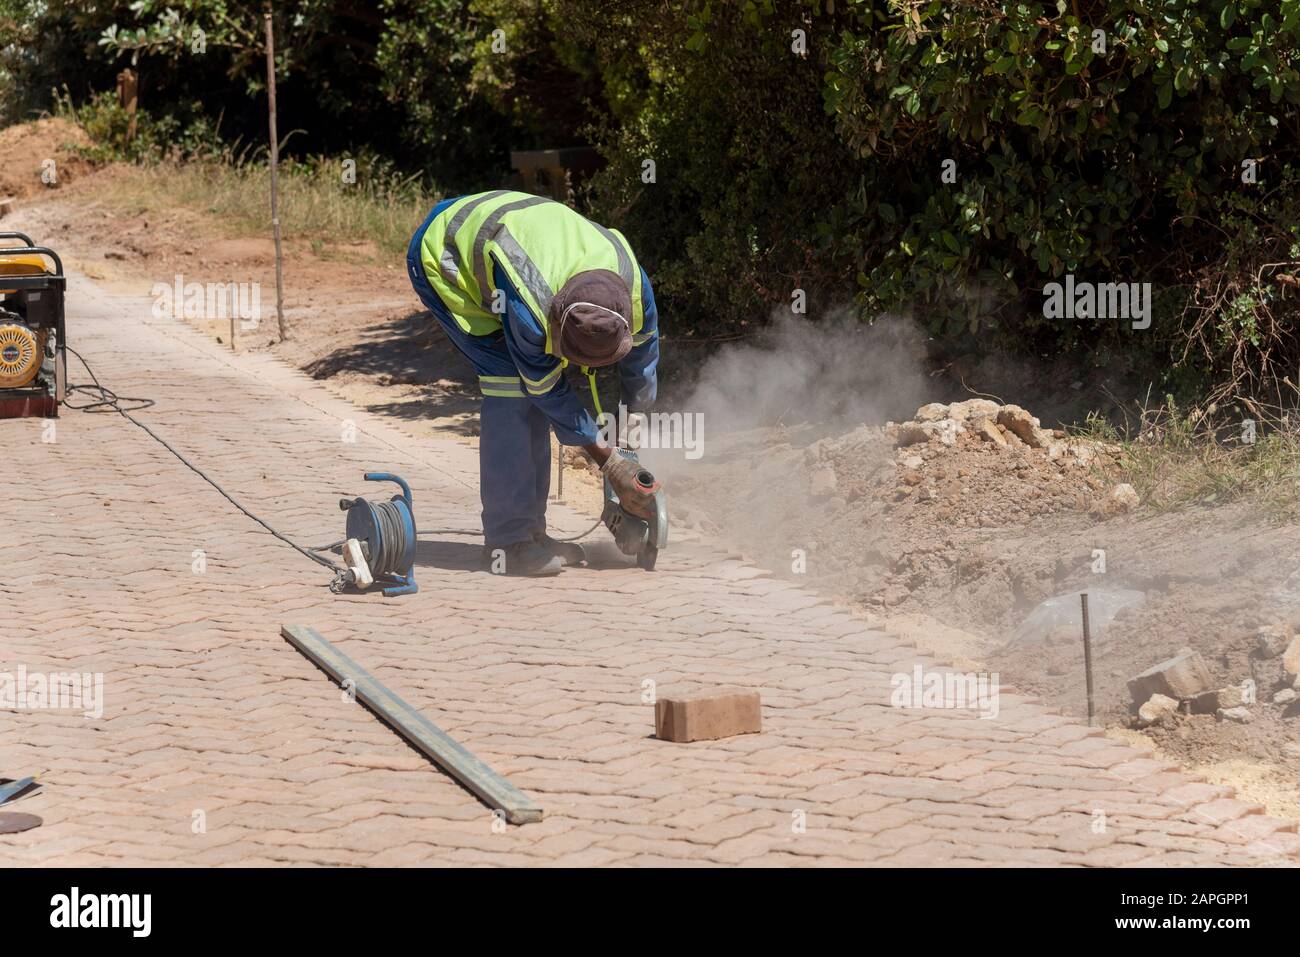 Rooiels, Capo Occidentale, Sud Africa. Dicembre 2019. Lavoratore che utilizza una smerigliatrice elettrica per finire la posa di una strada pavimentata in mattoni. Foto Stock